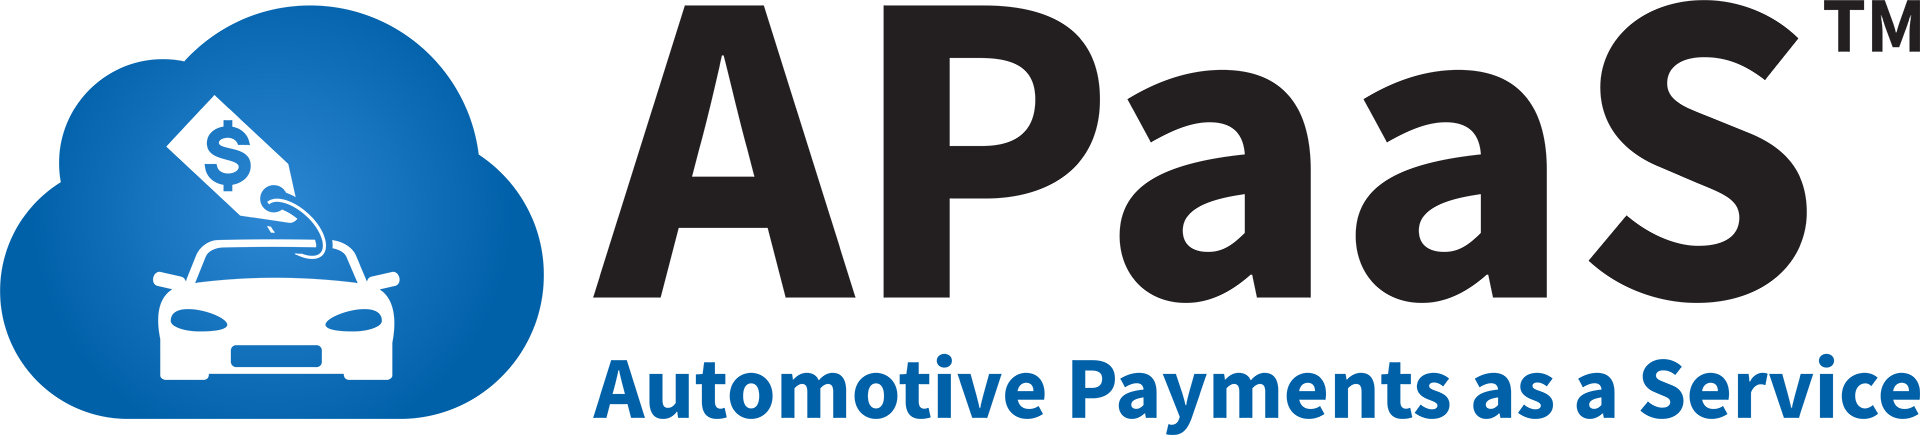 Automotive Payments as a Service Logo - Color